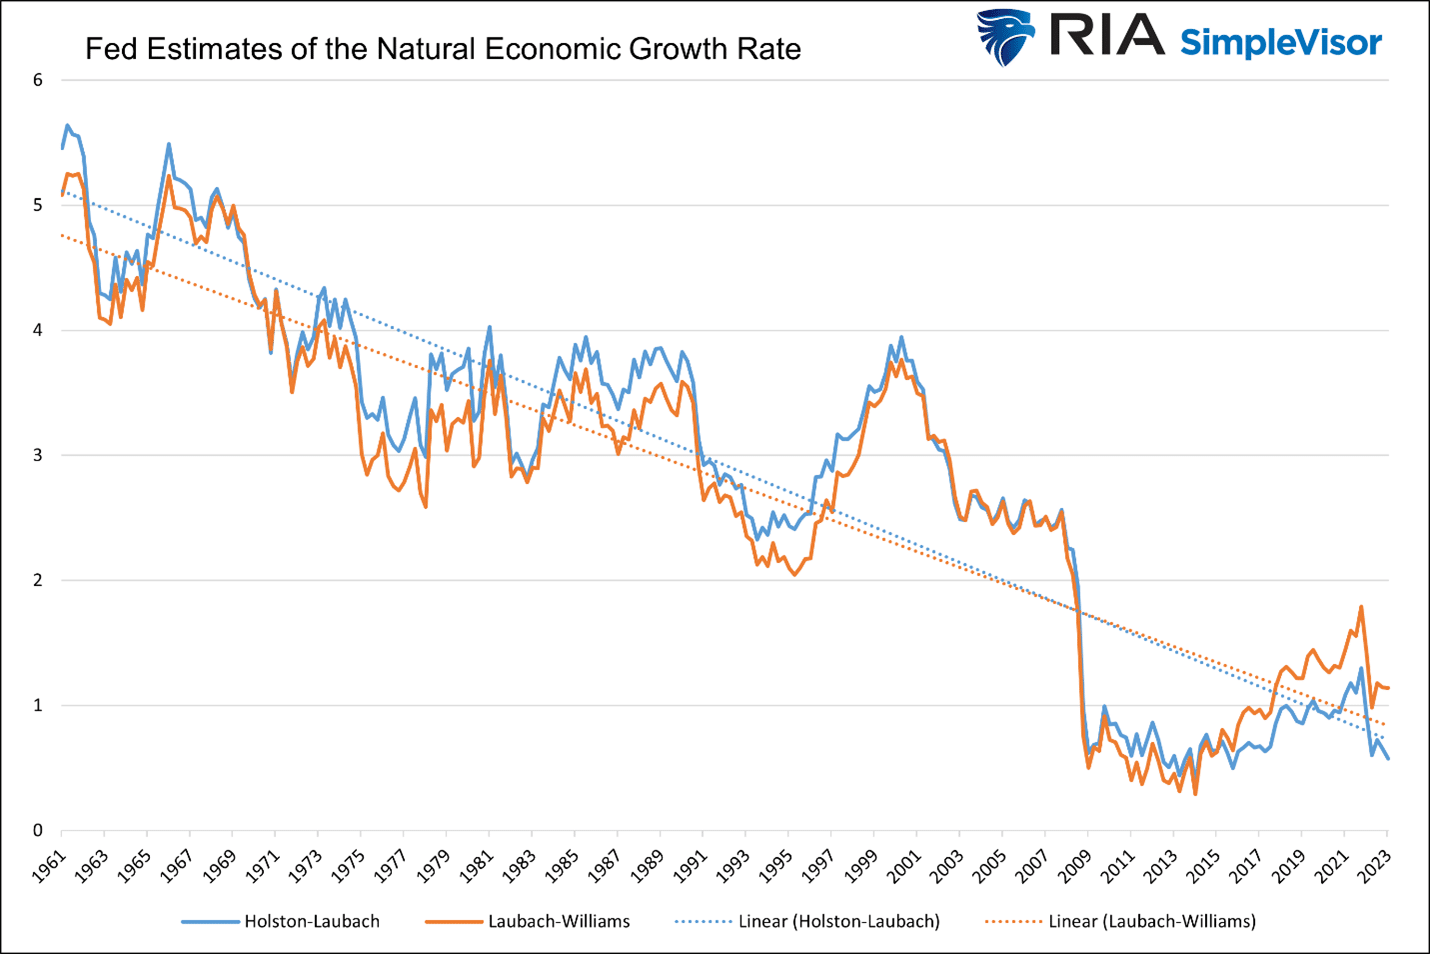 Estimativas do Fed para a Taxa de Crescimento Econômico Natural